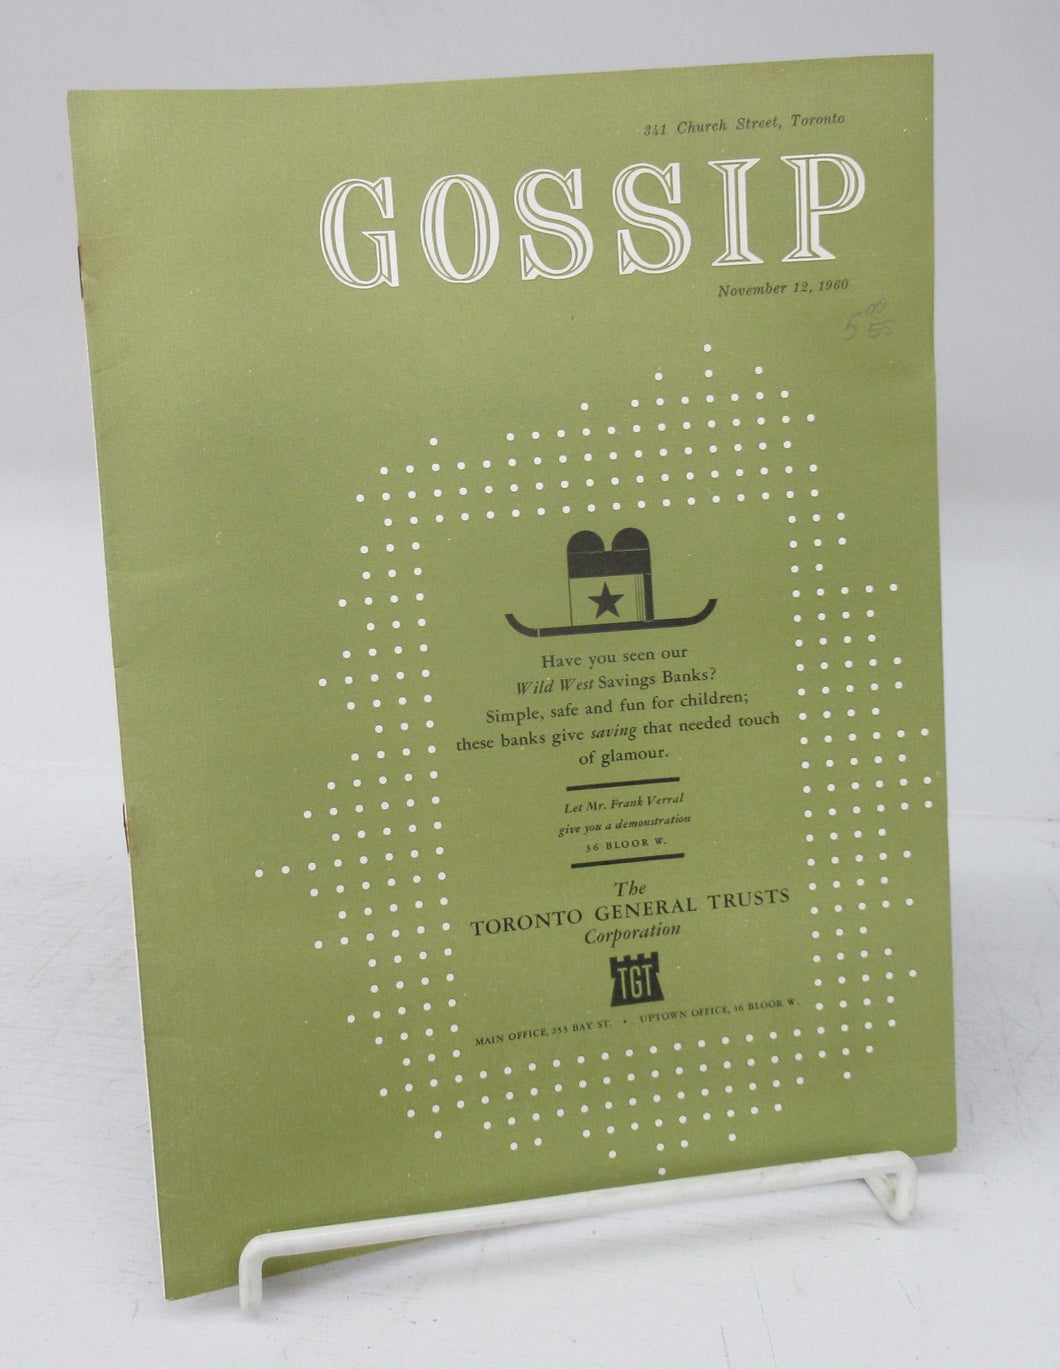 Gossip! November 12, 1960